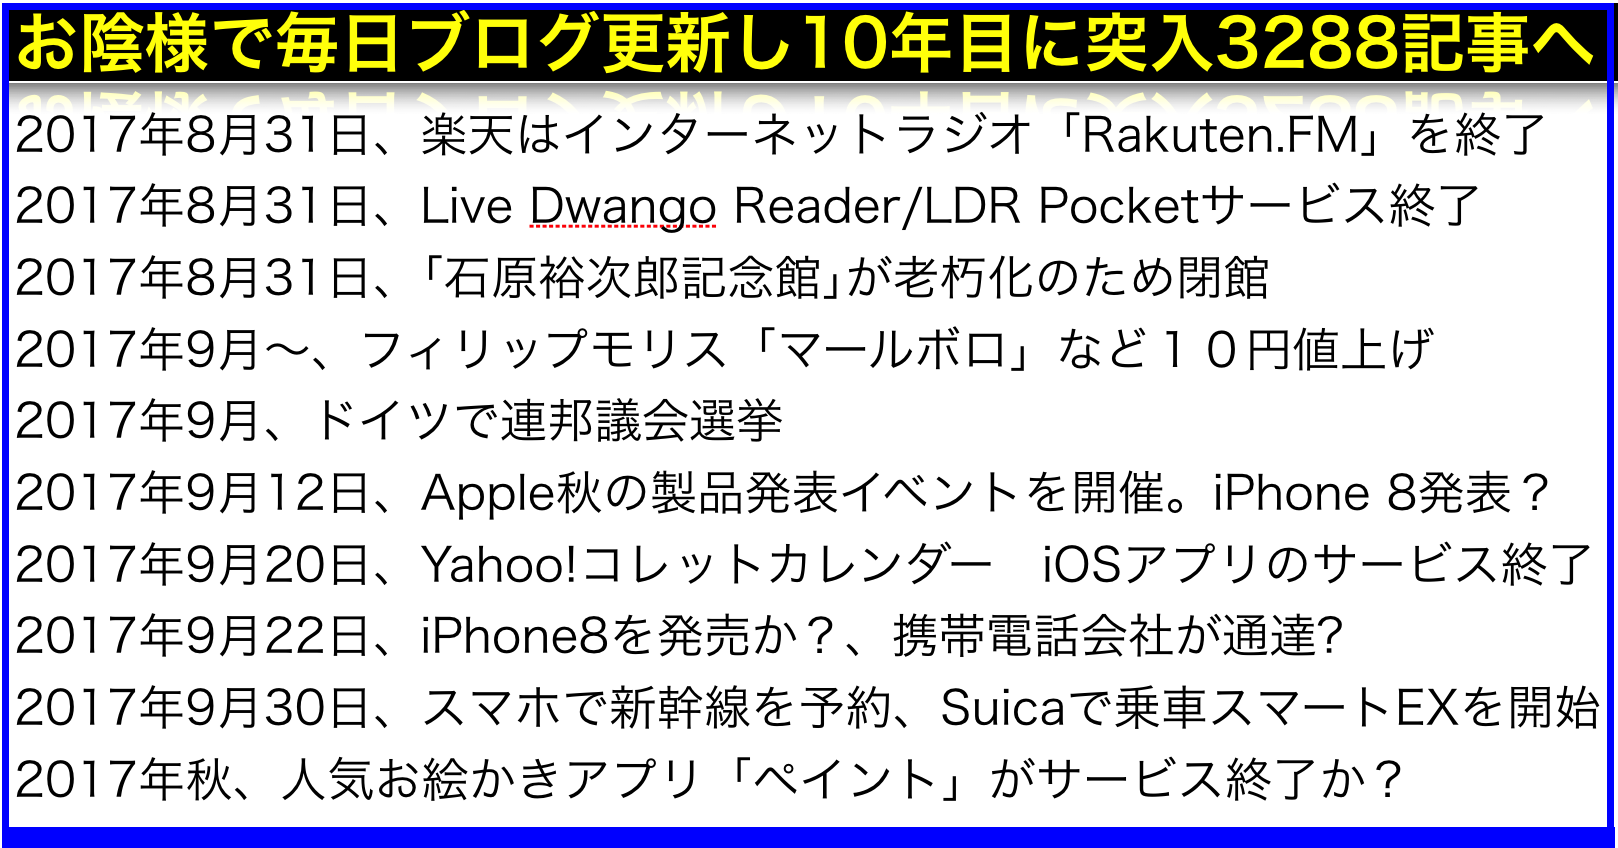 2017年(平成29年)9月から変わることiPhone8･スマートEX